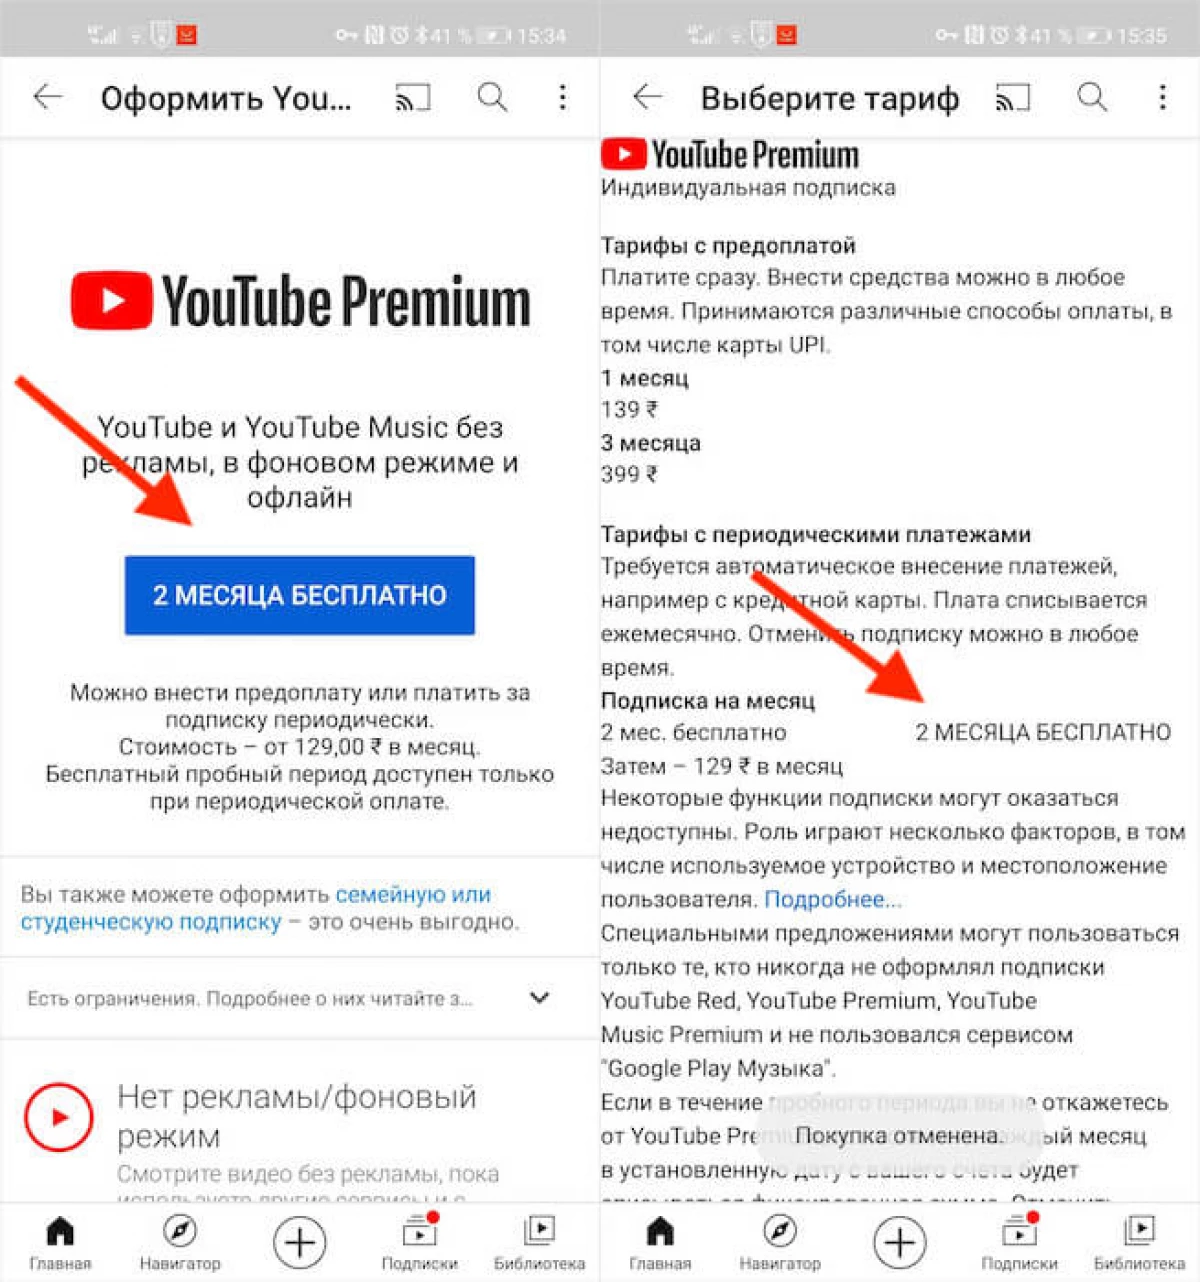 نحوه اشتراک در YouTube Premium با تخفیف برای 130 روبل 5039_3